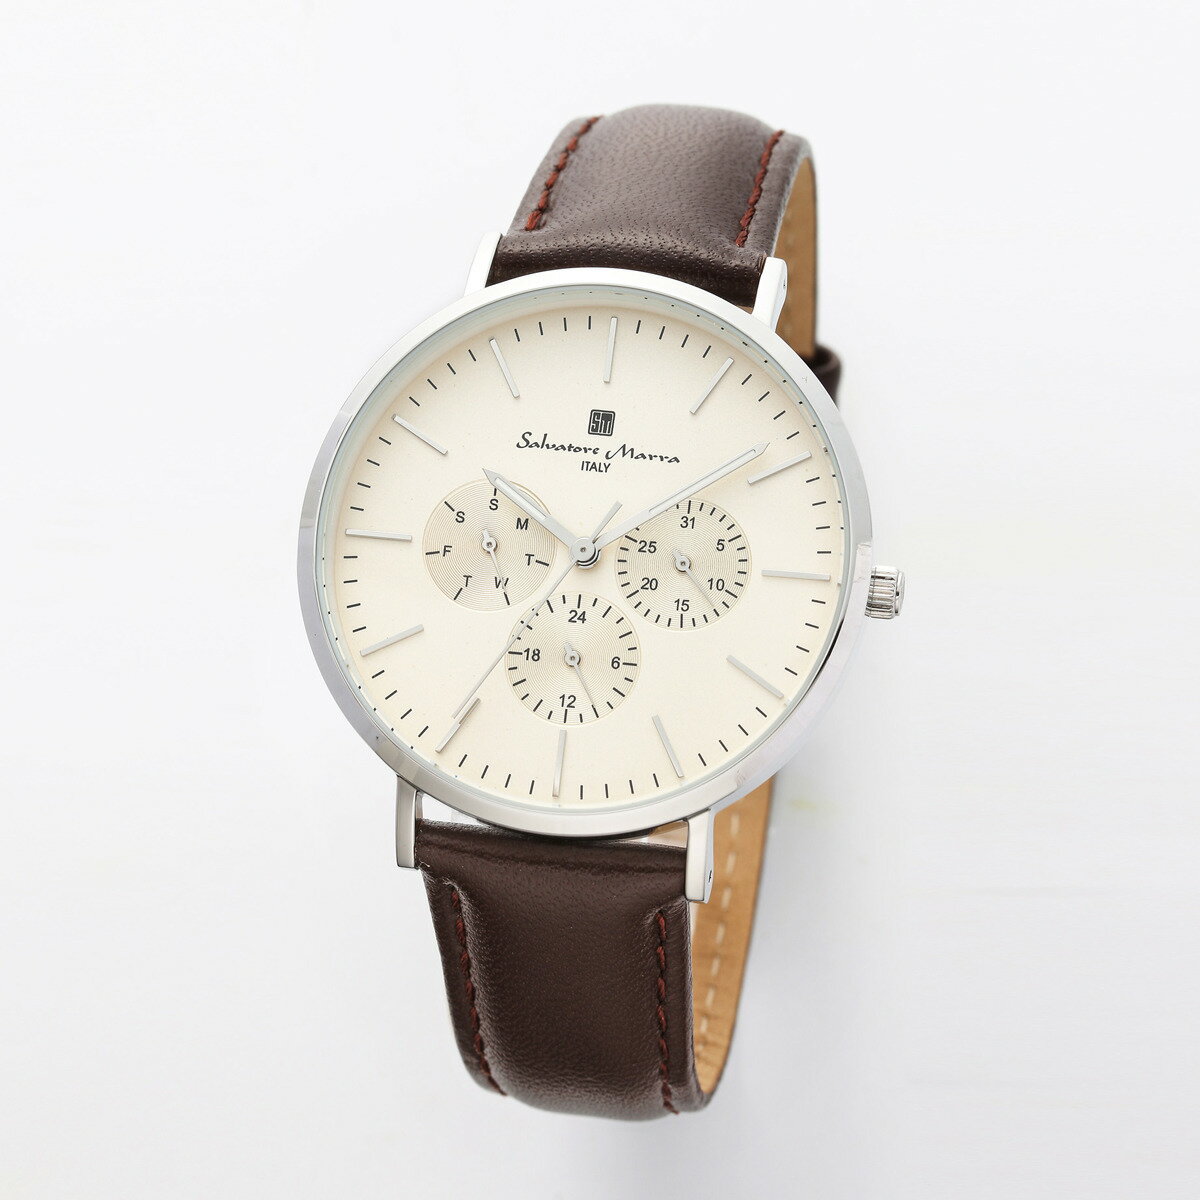 サルバトーレマーラ Salavatore Marra 腕時計 SM22102-SSCM クオーツ 腕時計 メンズ レディース レザーベルト アナログ表示 日常生活防水 男女兼用 時計